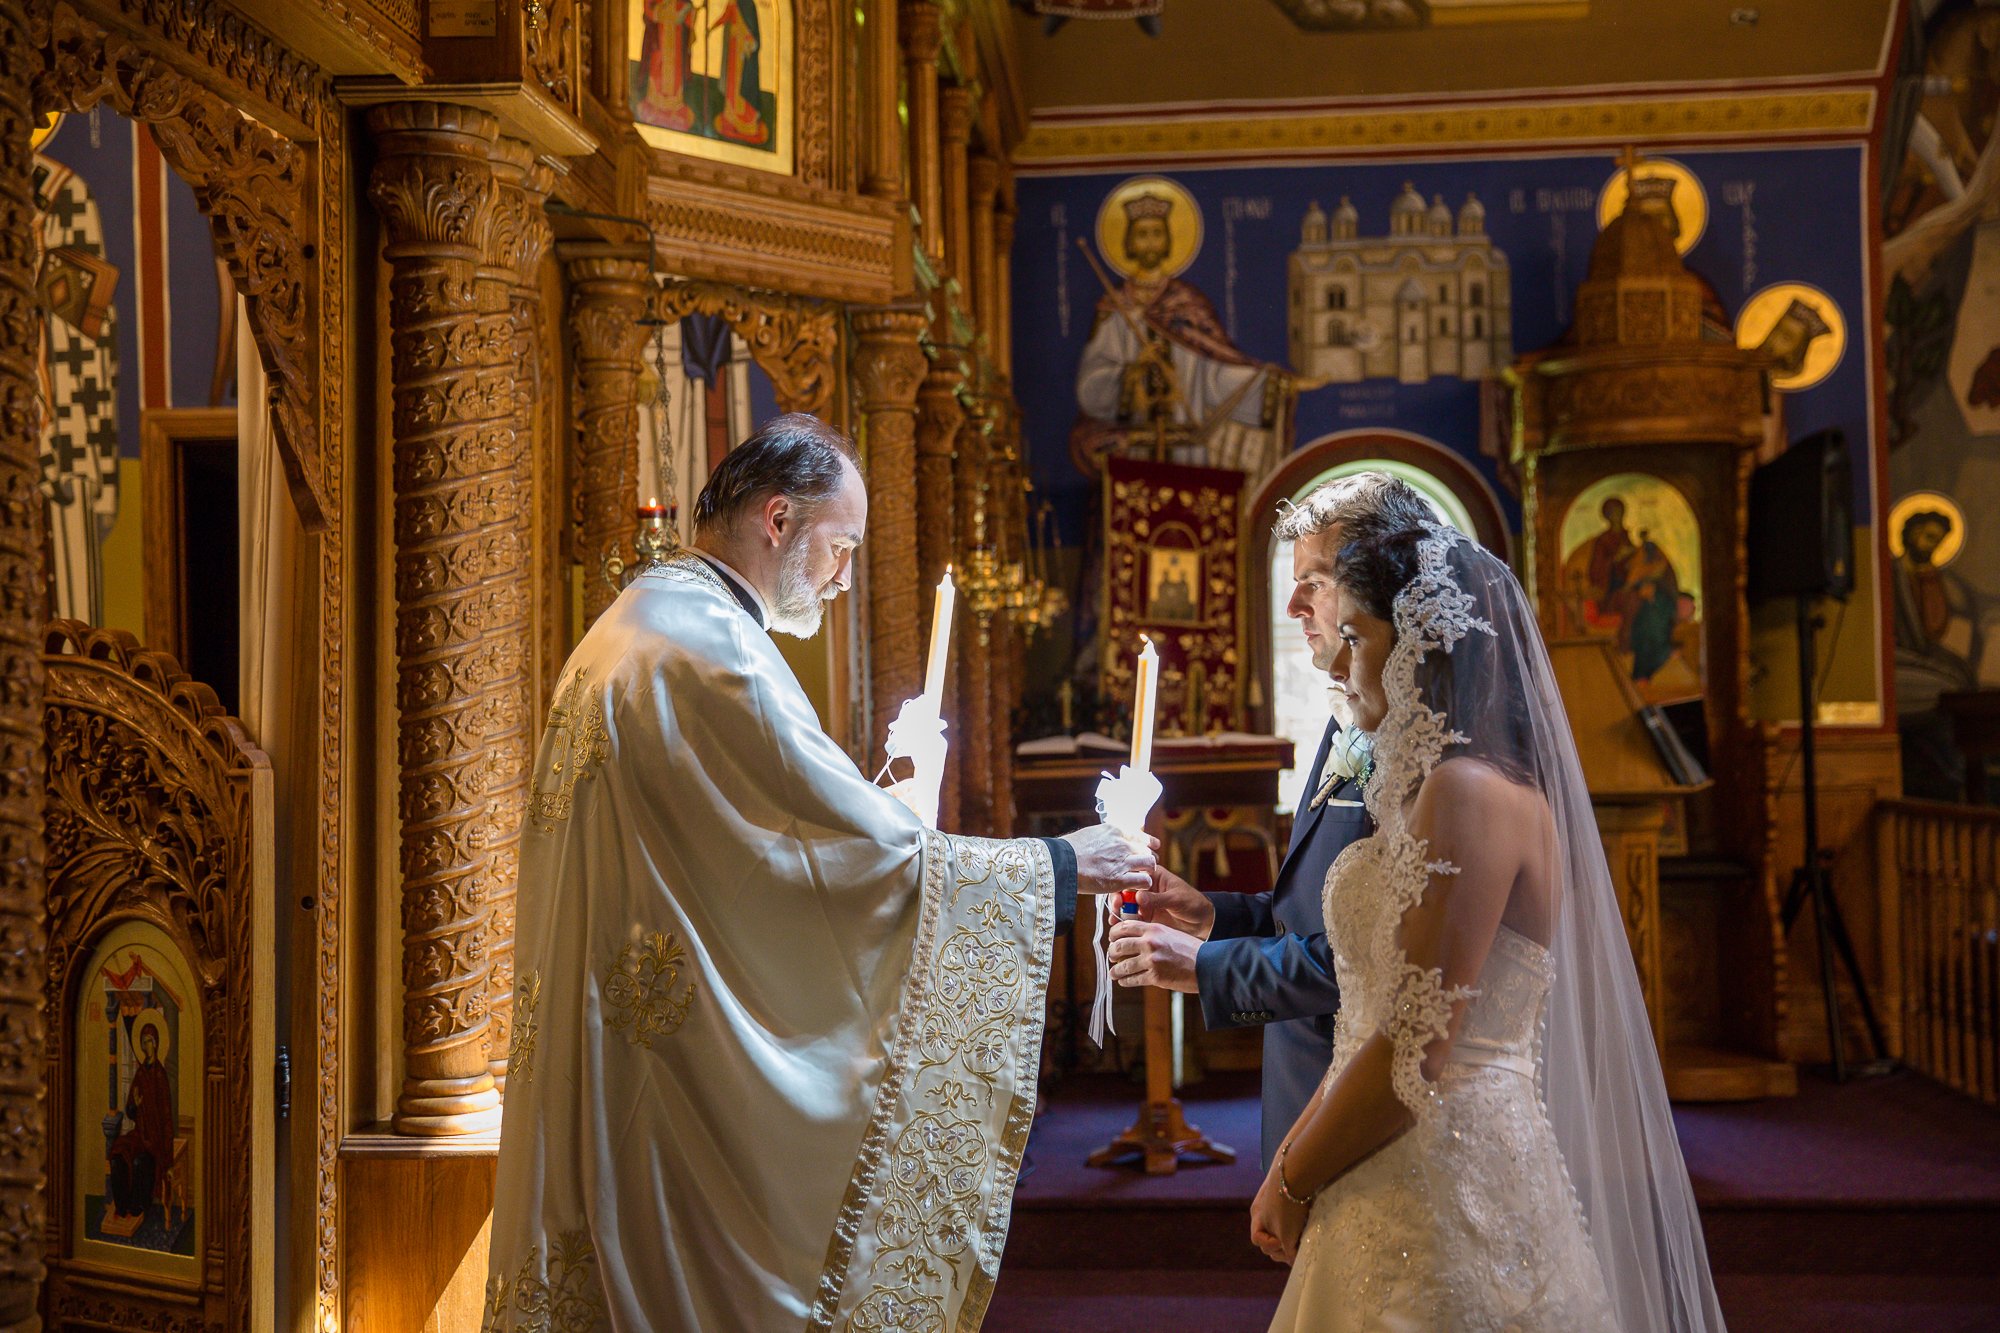 Венчание в церкви время. Венчание в христианстве. Венчание в церкви. Фотосессия венчания в церкви.